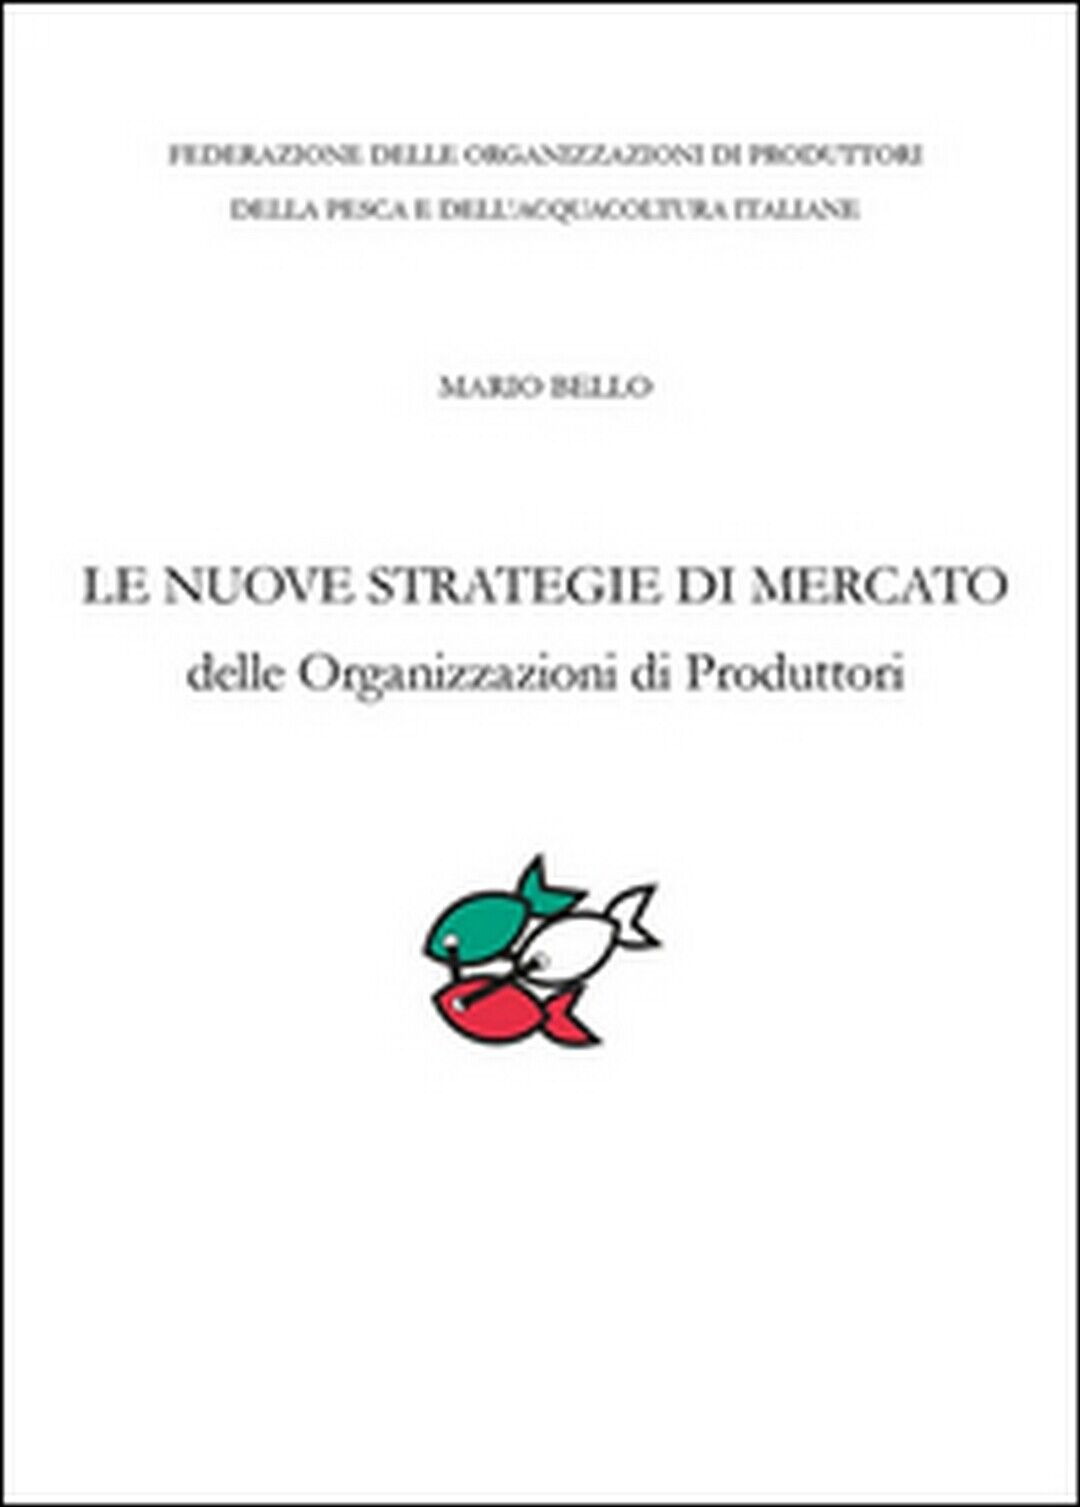 Le nuove strategie di mercato delle organizzazioni di produttori  di Mario Bello